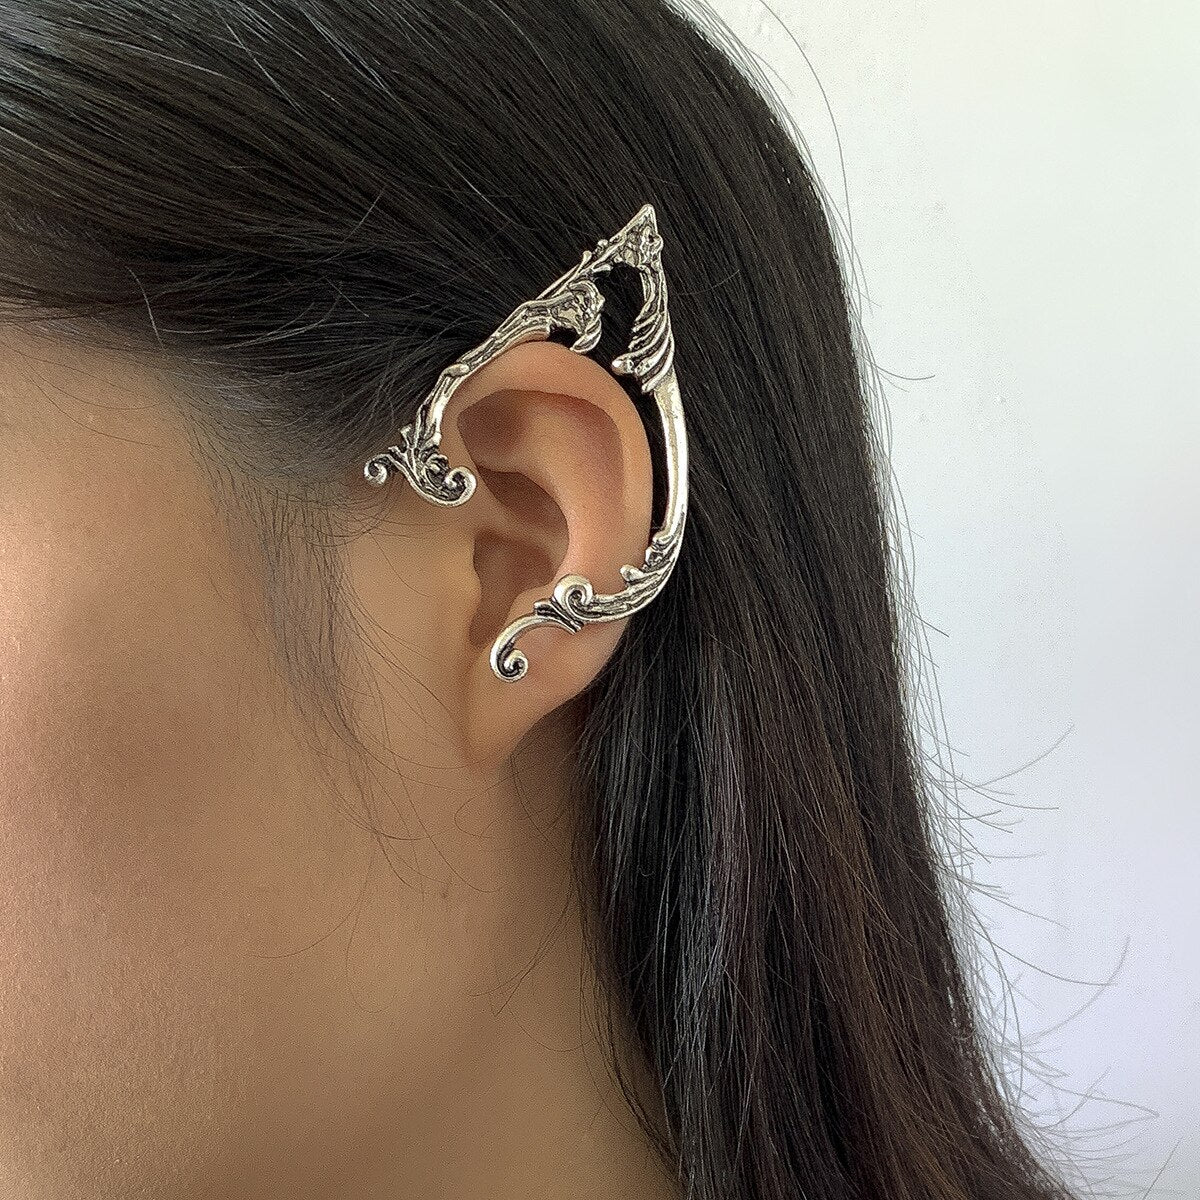 Punk Elf Ears Ear Cuff Earrings Goth Dark Skin Clip Girl Women Fairy With Piercings Halloween Jewellery Party Trend Wholesale